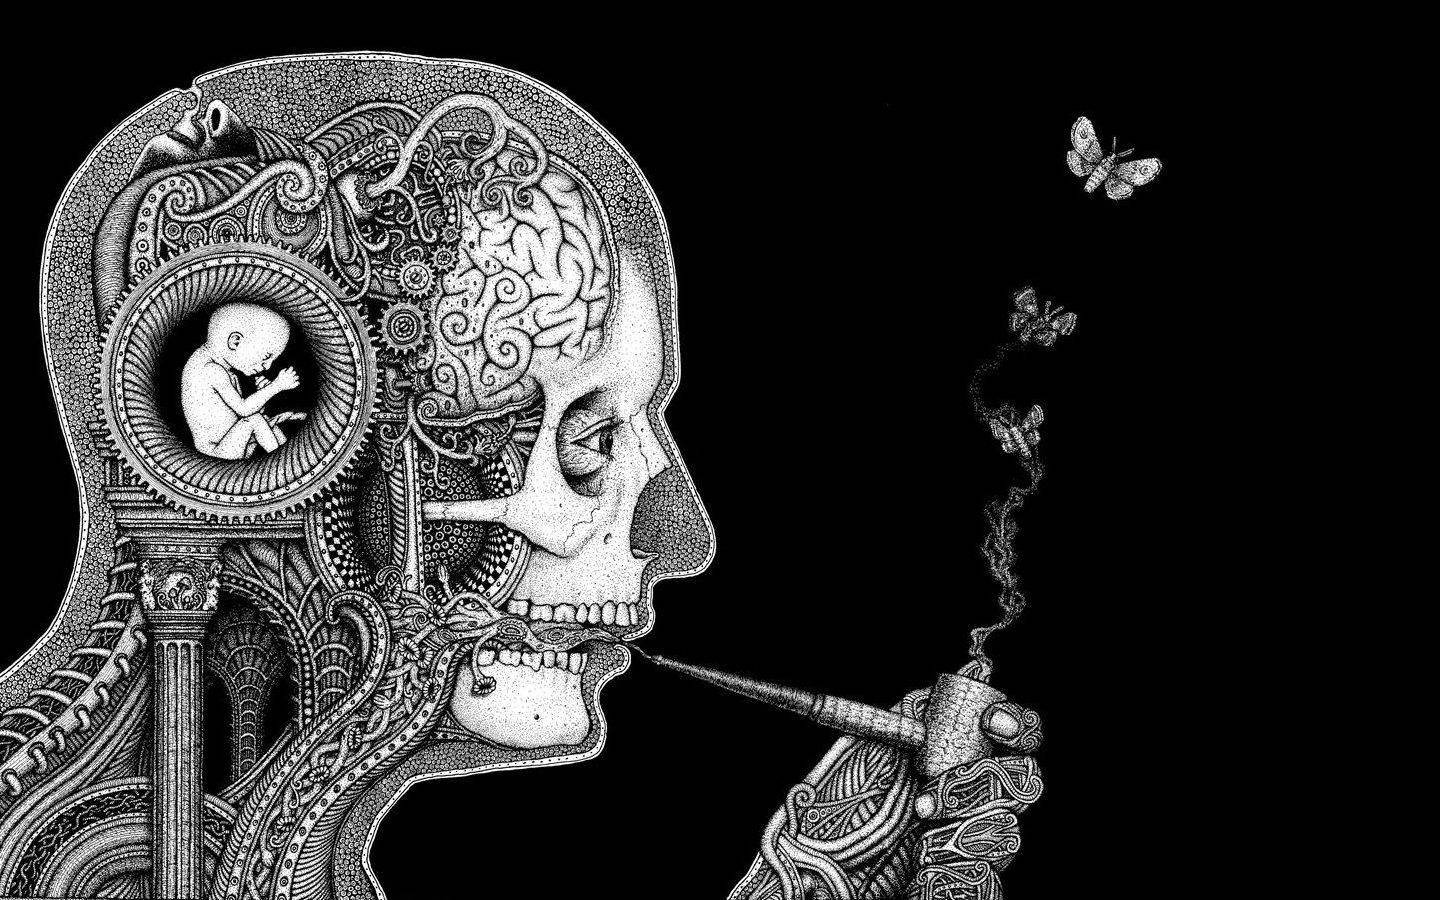 En mand ryger en cigaret i et sort og hvidt tegning. Wallpaper